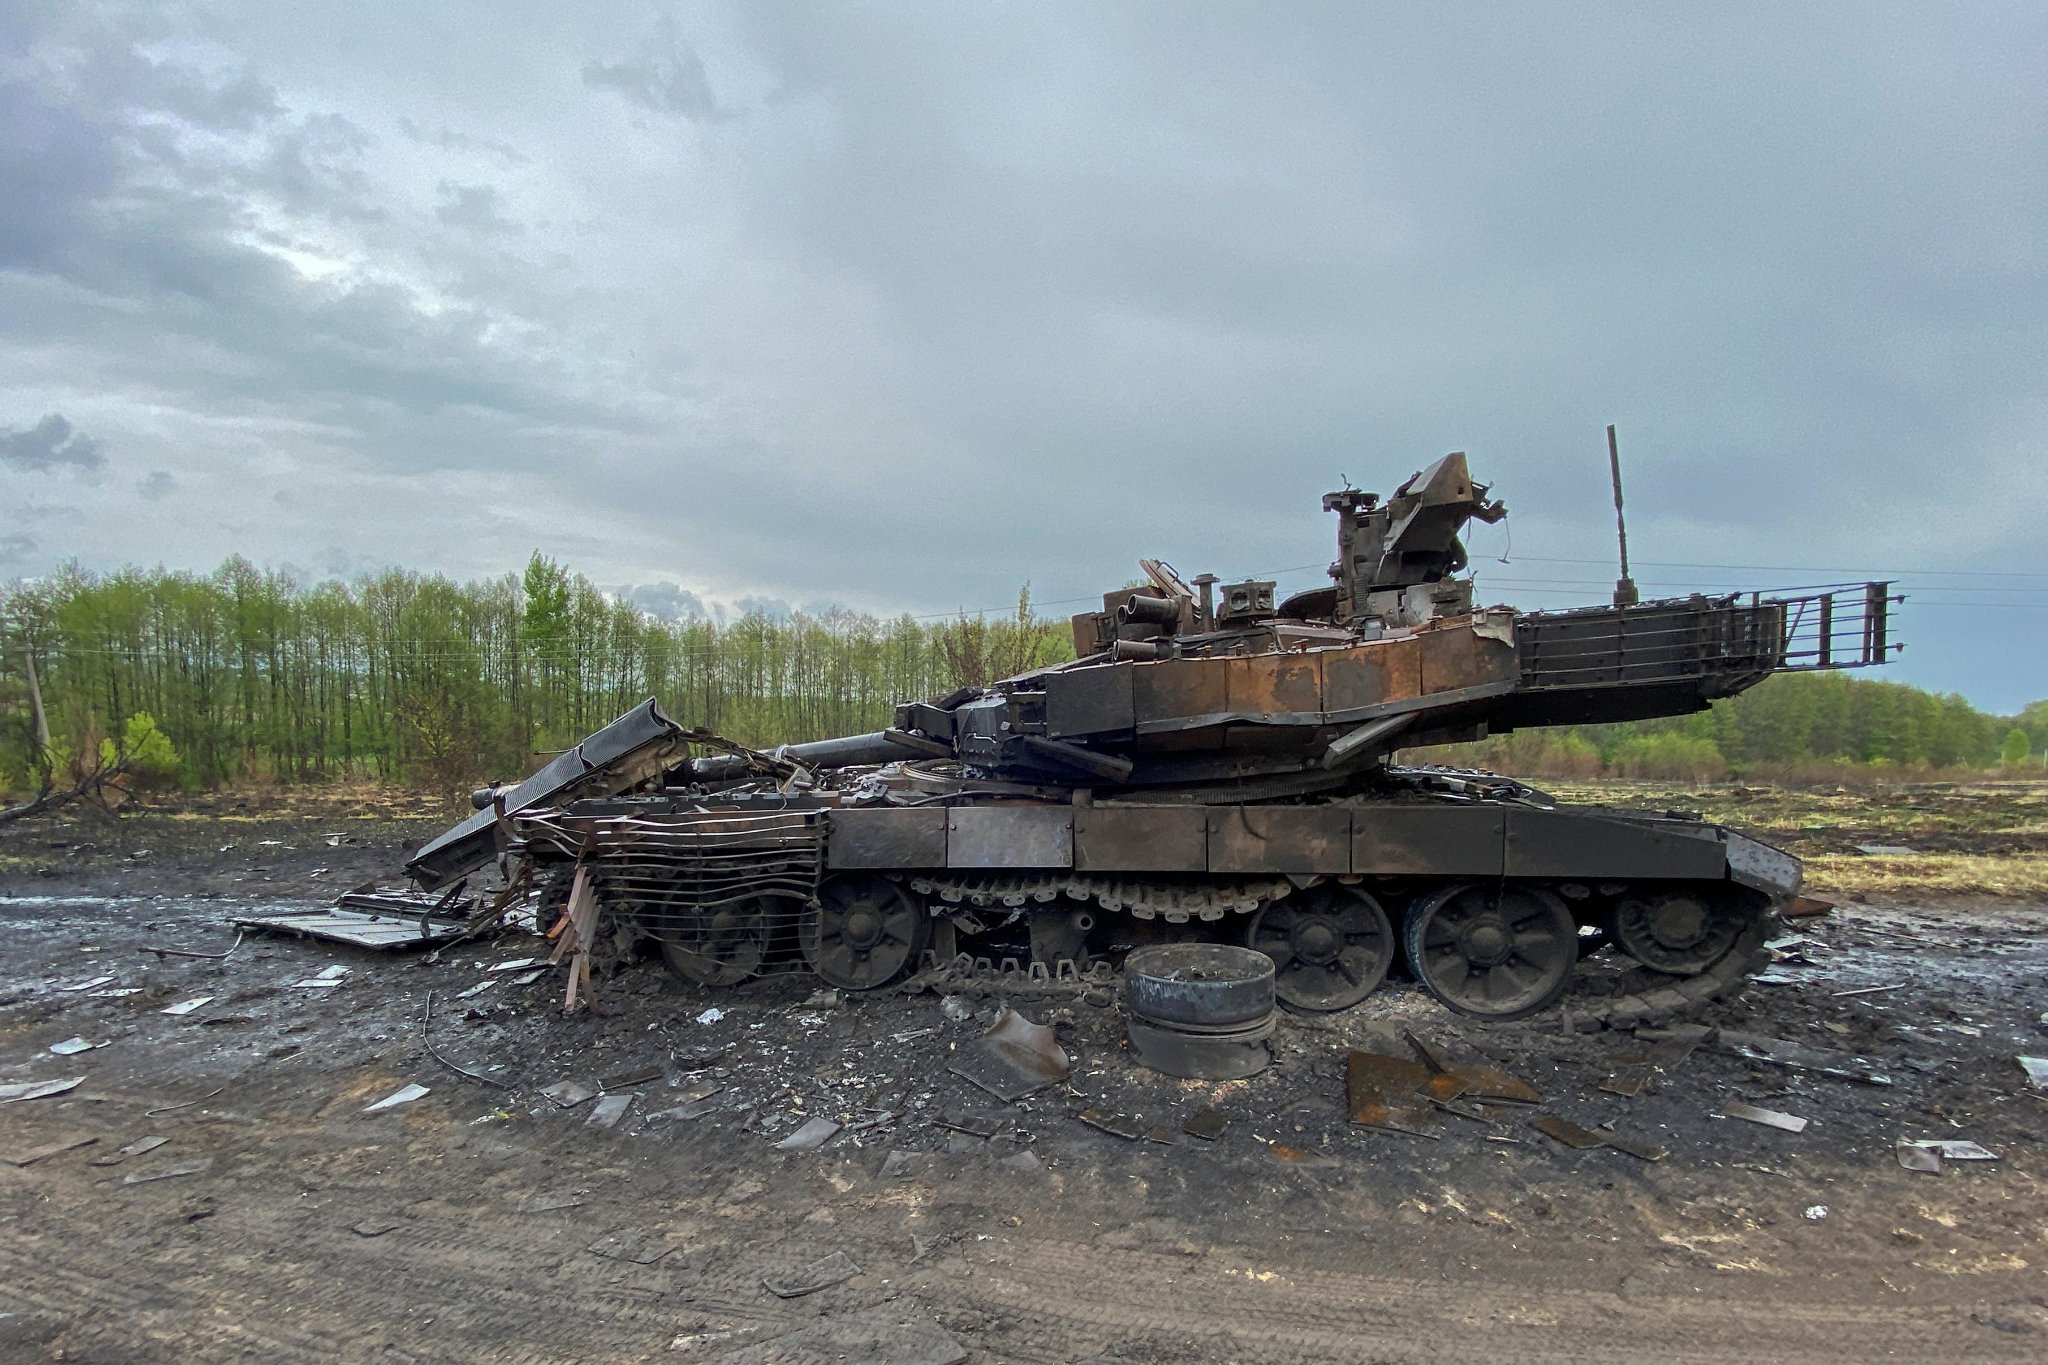 Черговий російський новітній танк Т-90М “Прорив” знищили бійці Нацгвардіії України – новина дня